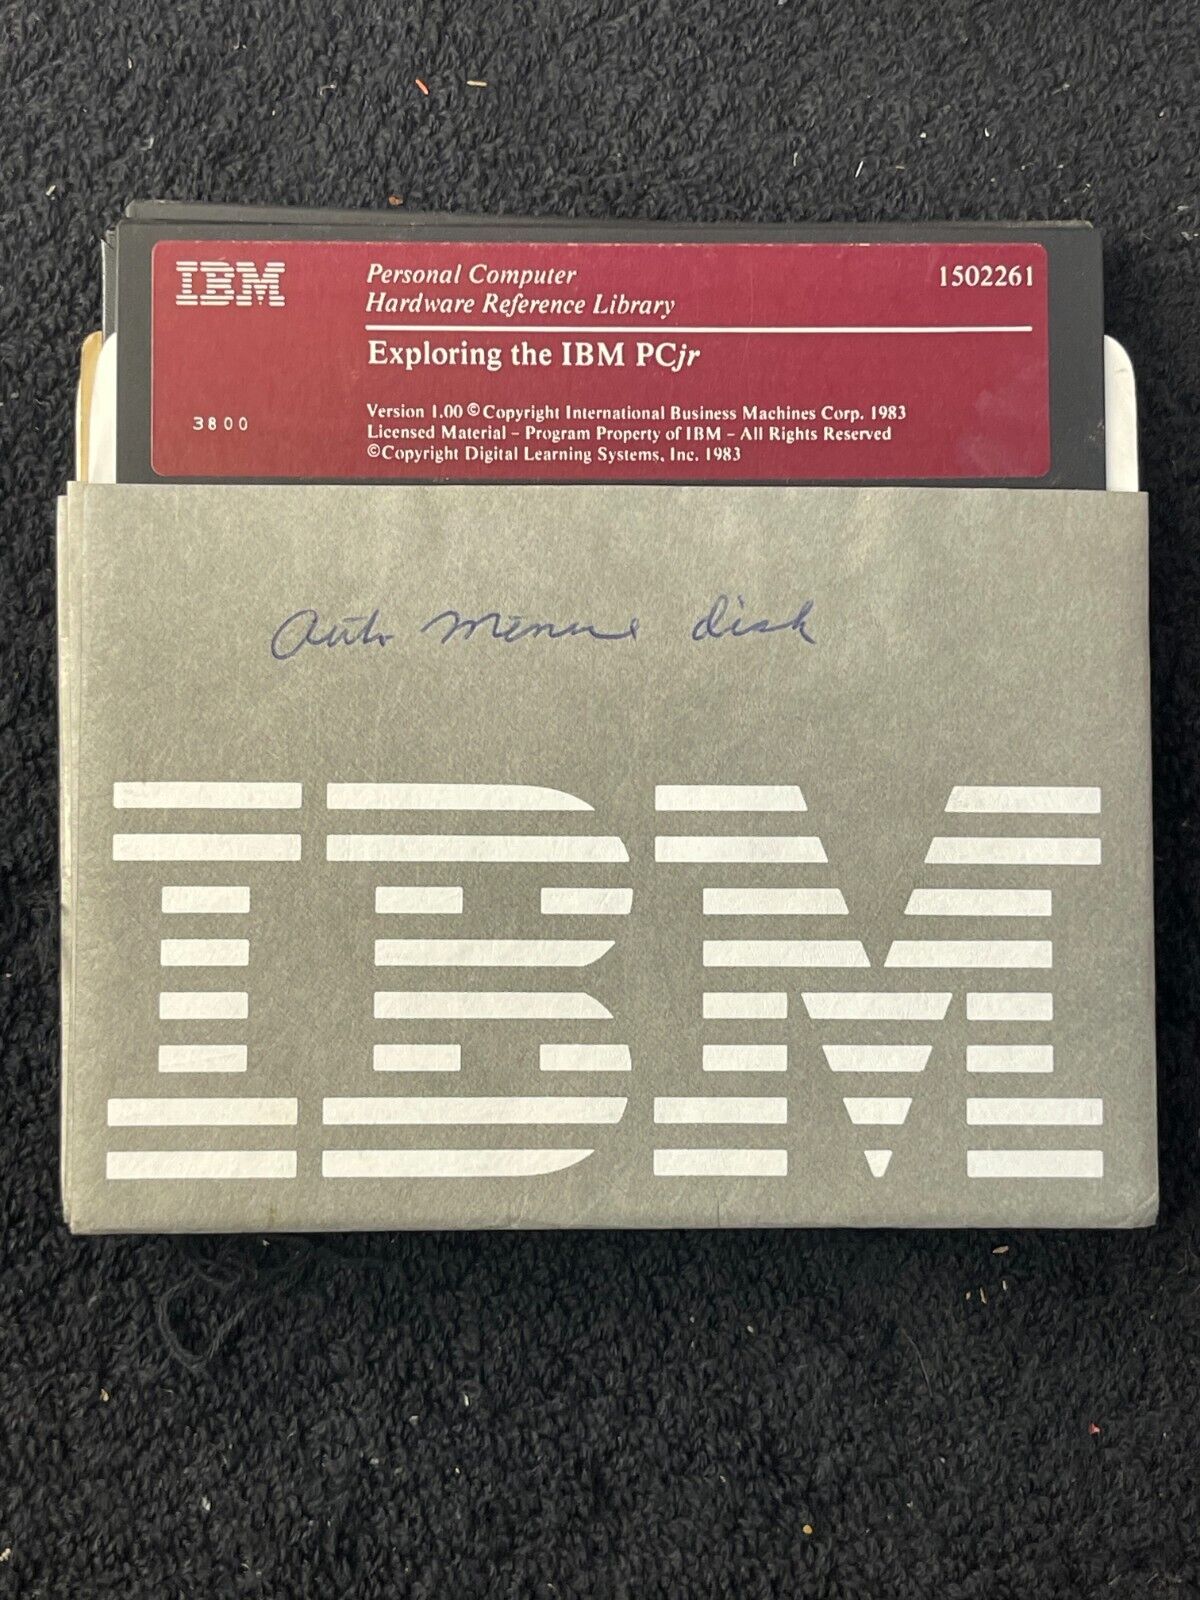 IBM Exploring the IBM PCjr - 5.25 Media